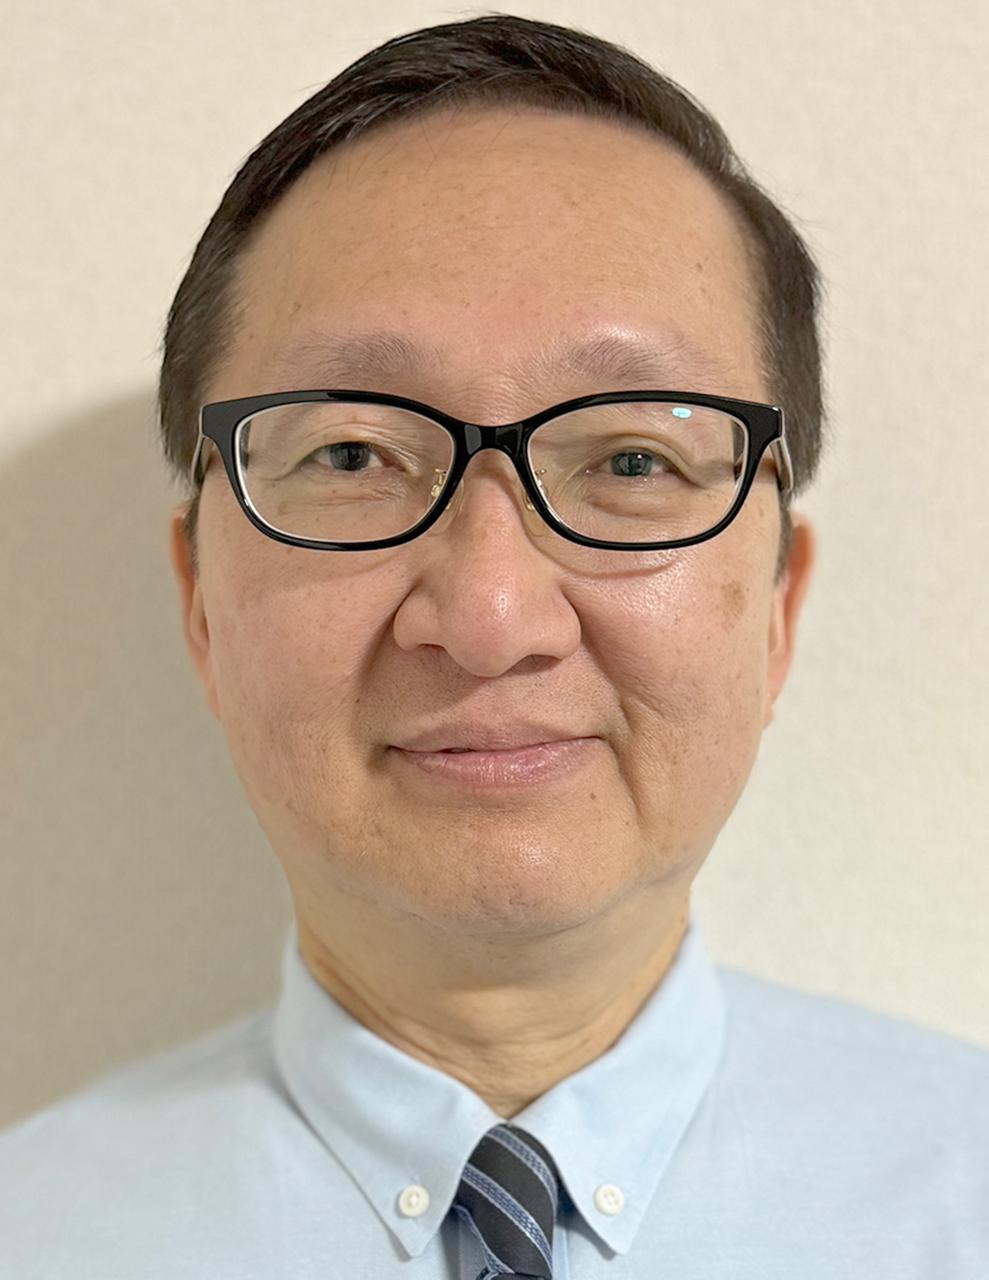 Dr. Hisayuki Miyajima’s clinic